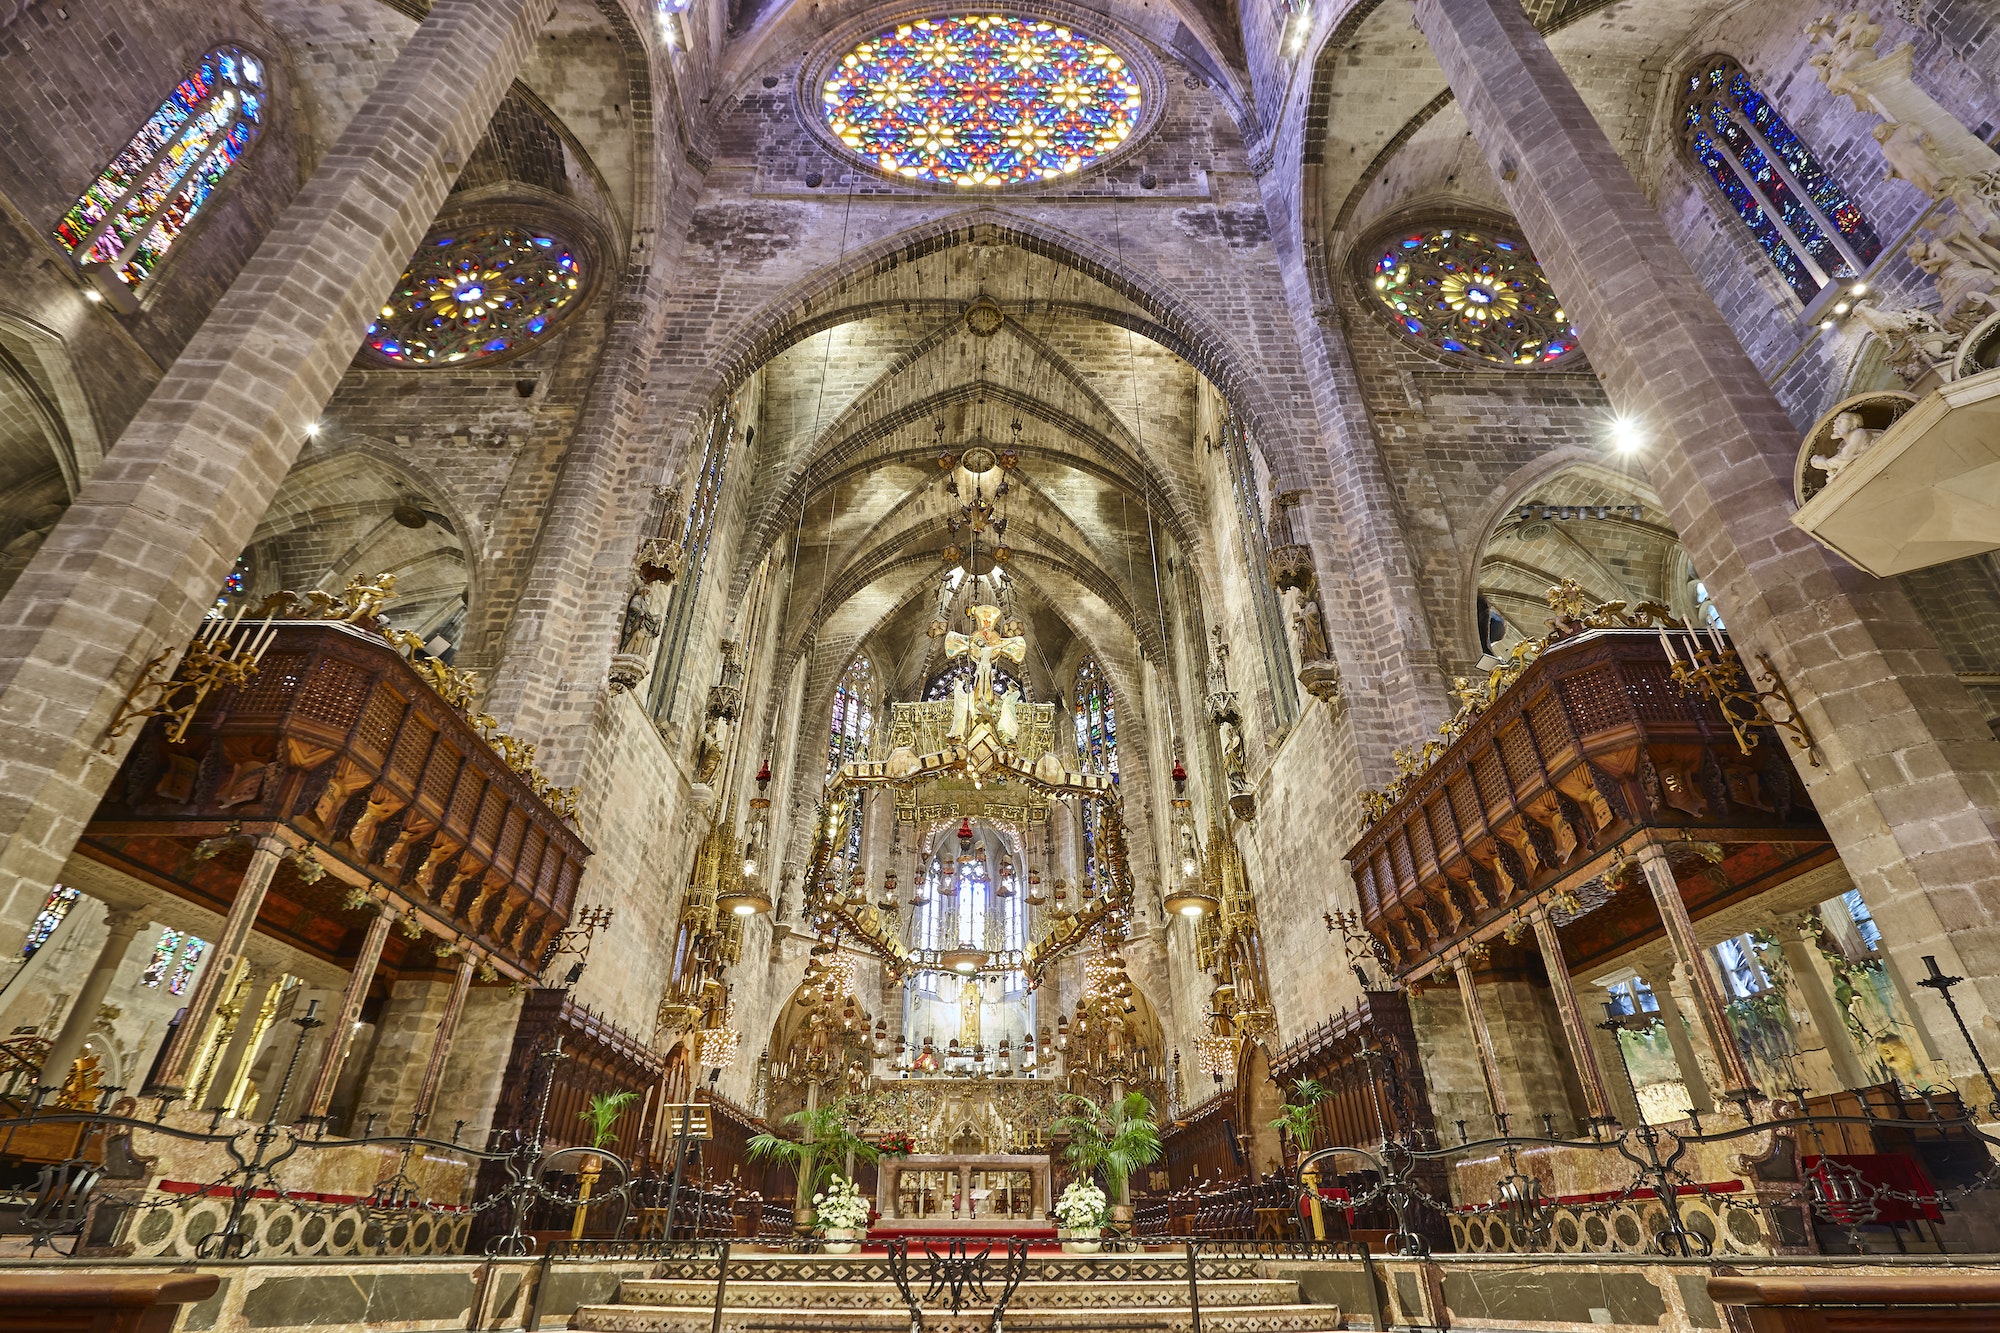 Ábside y rosetón de la catedral de Palma de Mallorca. Patrimonio español